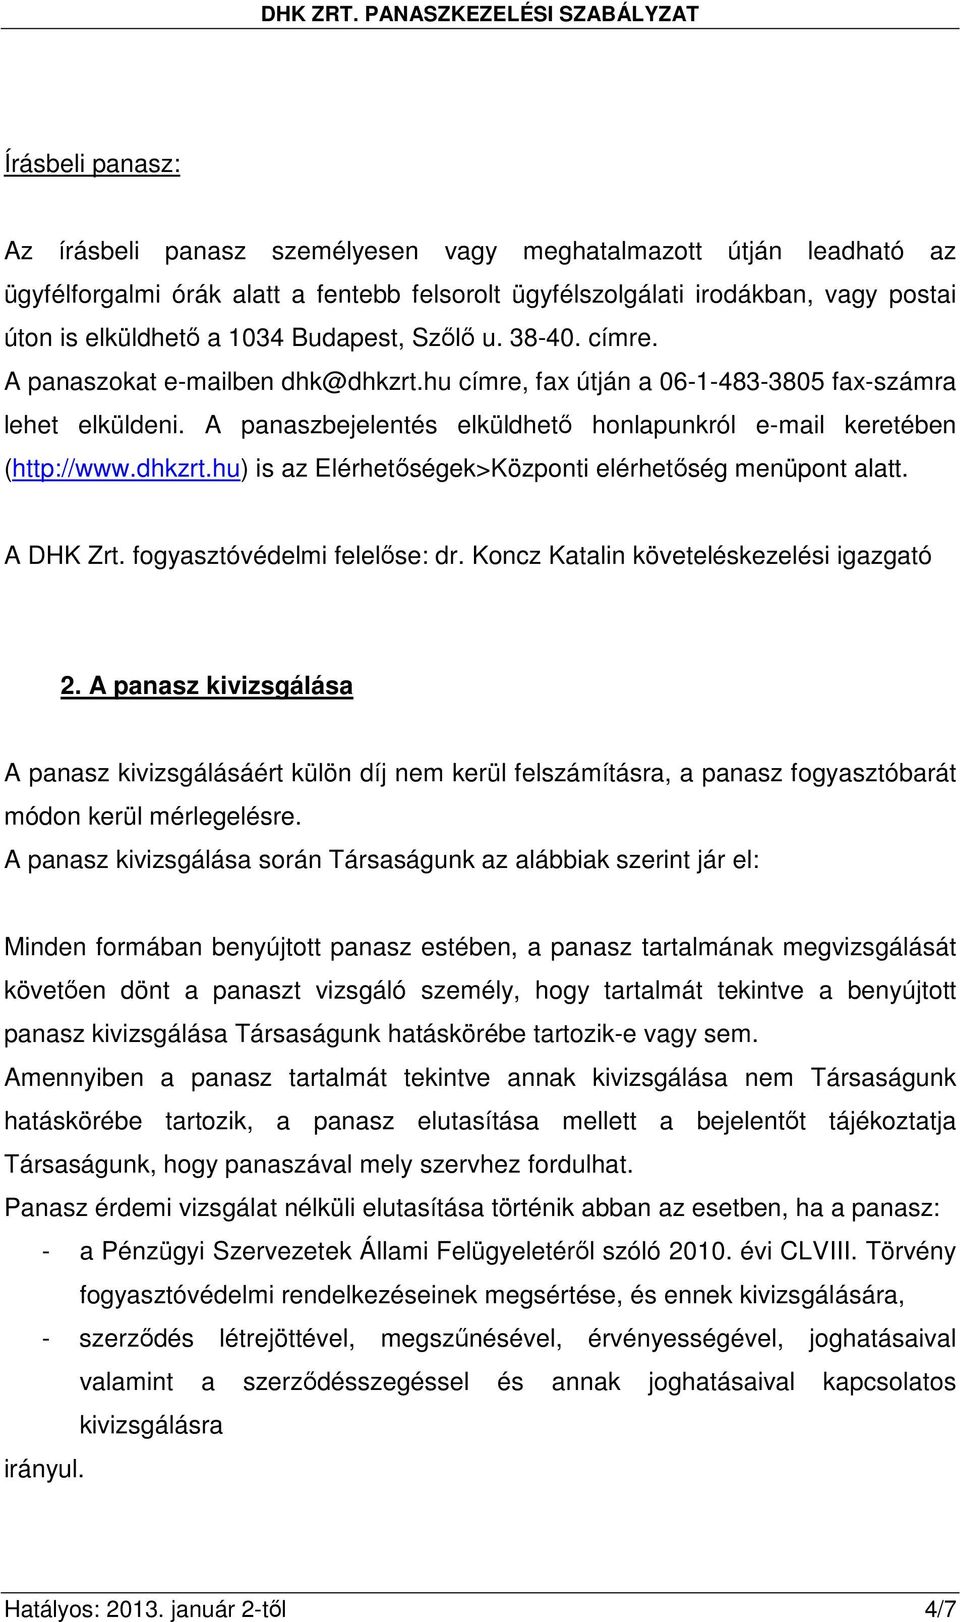 A panaszbejelentés elküldhetı honlapunkról e-mail keretében (http://www.dhkzrt.hu) is az Elérhetıségek>Központi elérhetıség menüpont alatt. A DHK Zrt. fogyasztóvédelmi felelıse: dr.